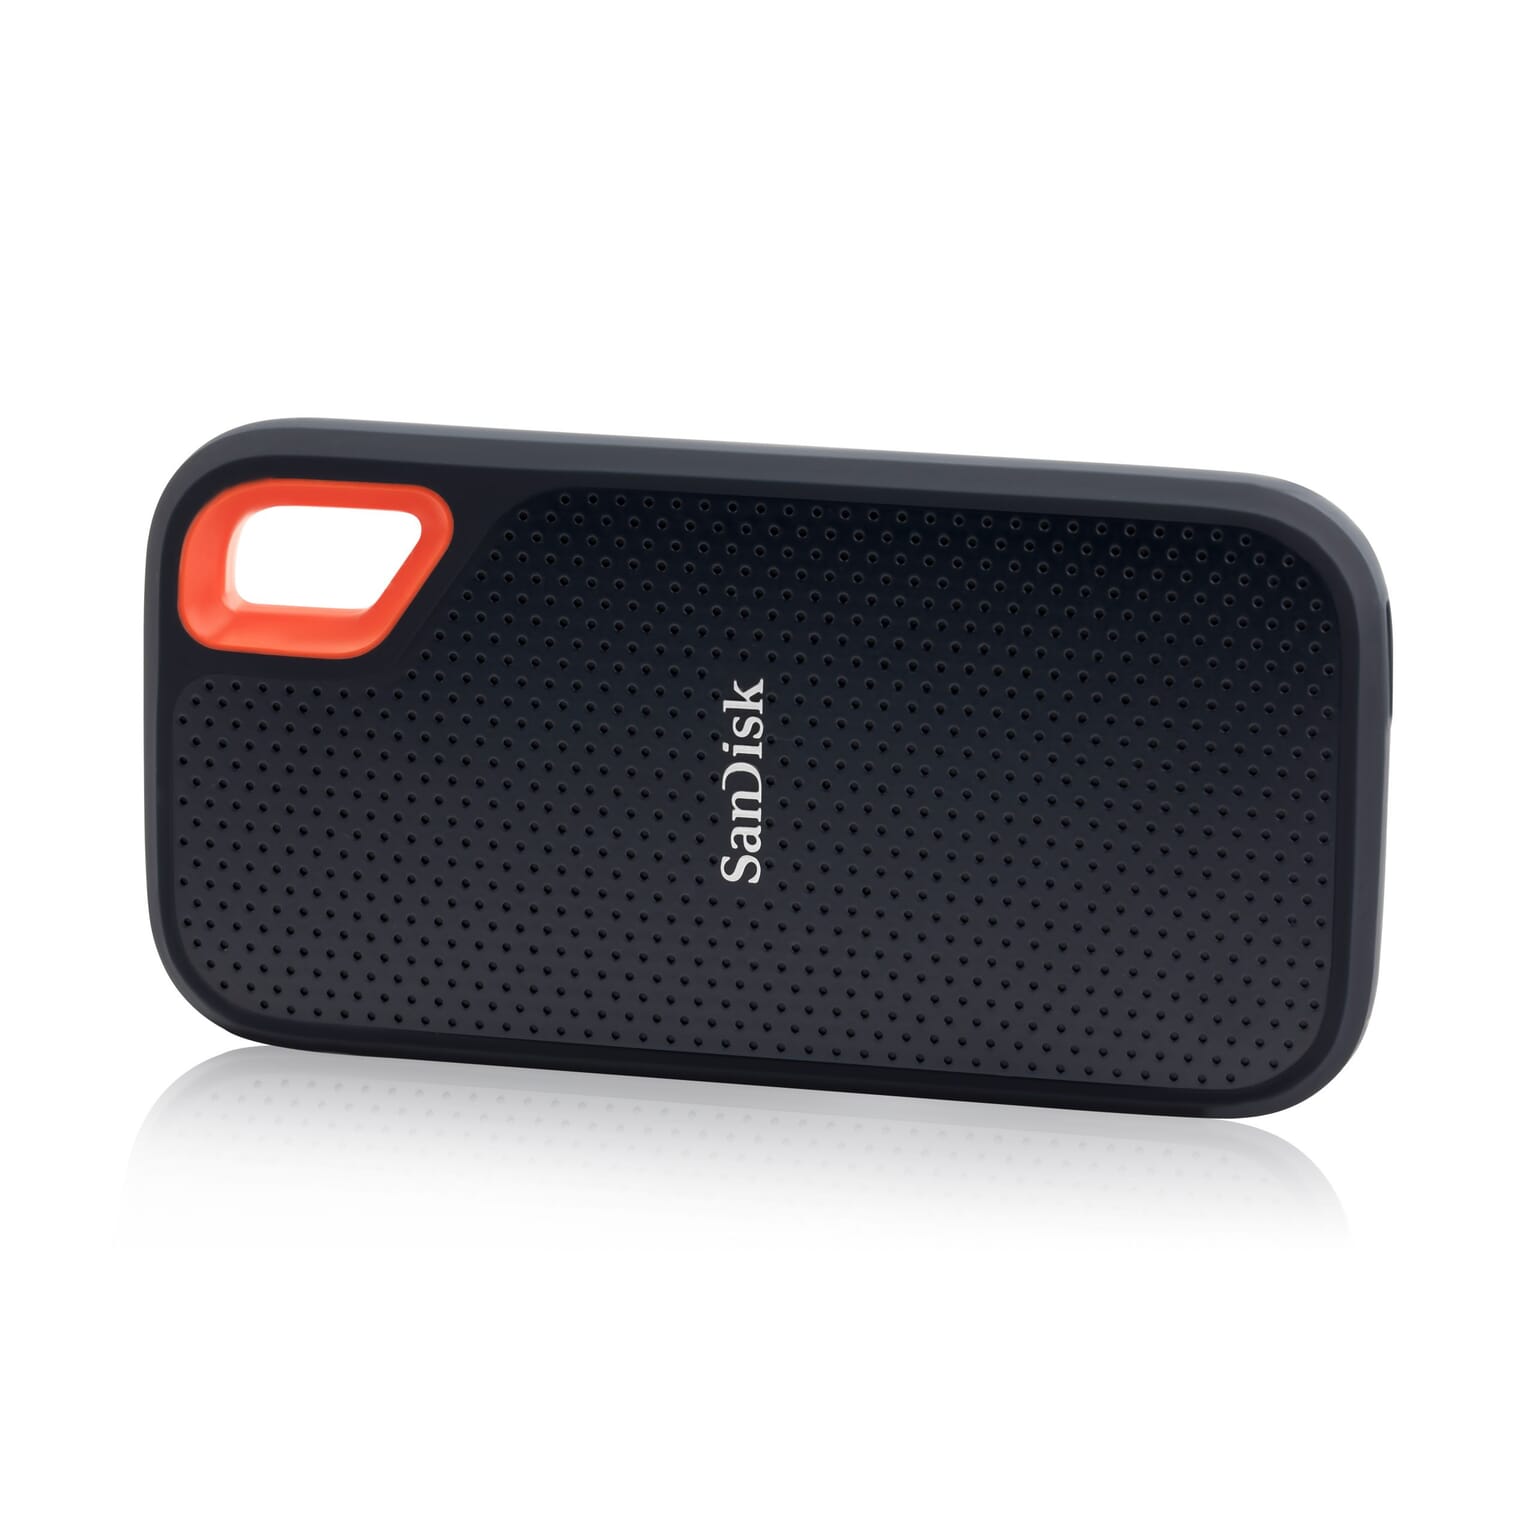 מגן לטלפון סלולרי של חברת סאנדיסק בצבע שחור מונח על צידו על גבי רקע לבן